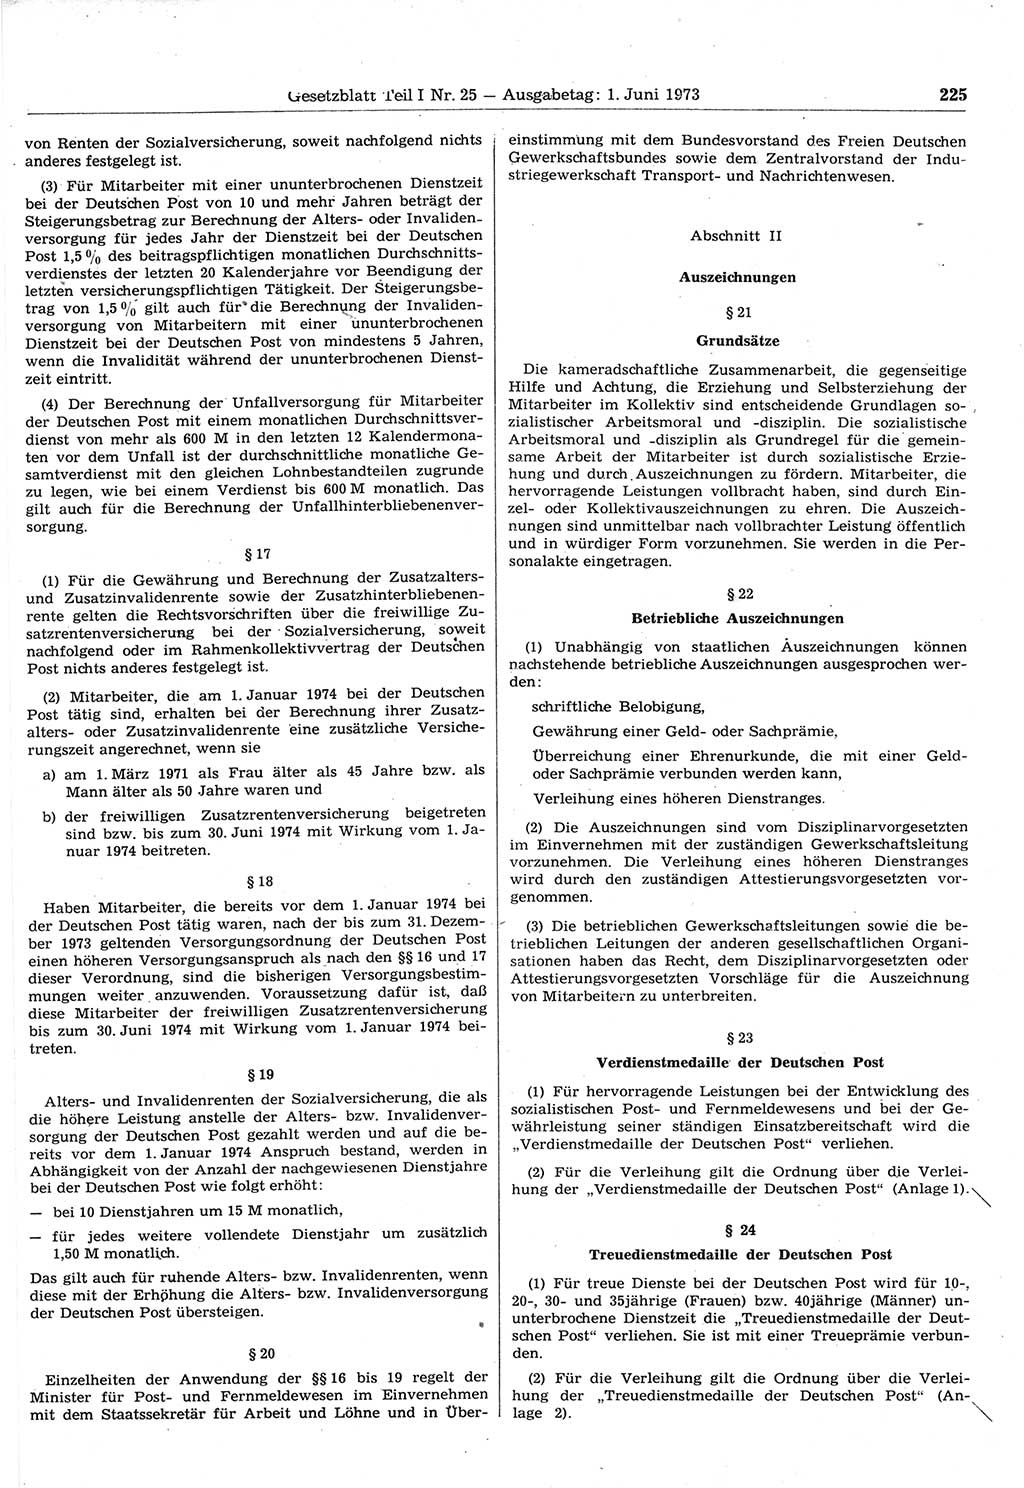 Gesetzblatt (GBl.) der Deutschen Demokratischen Republik (DDR) Teil Ⅰ 1973, Seite 225 (GBl. DDR Ⅰ 1973, S. 225)